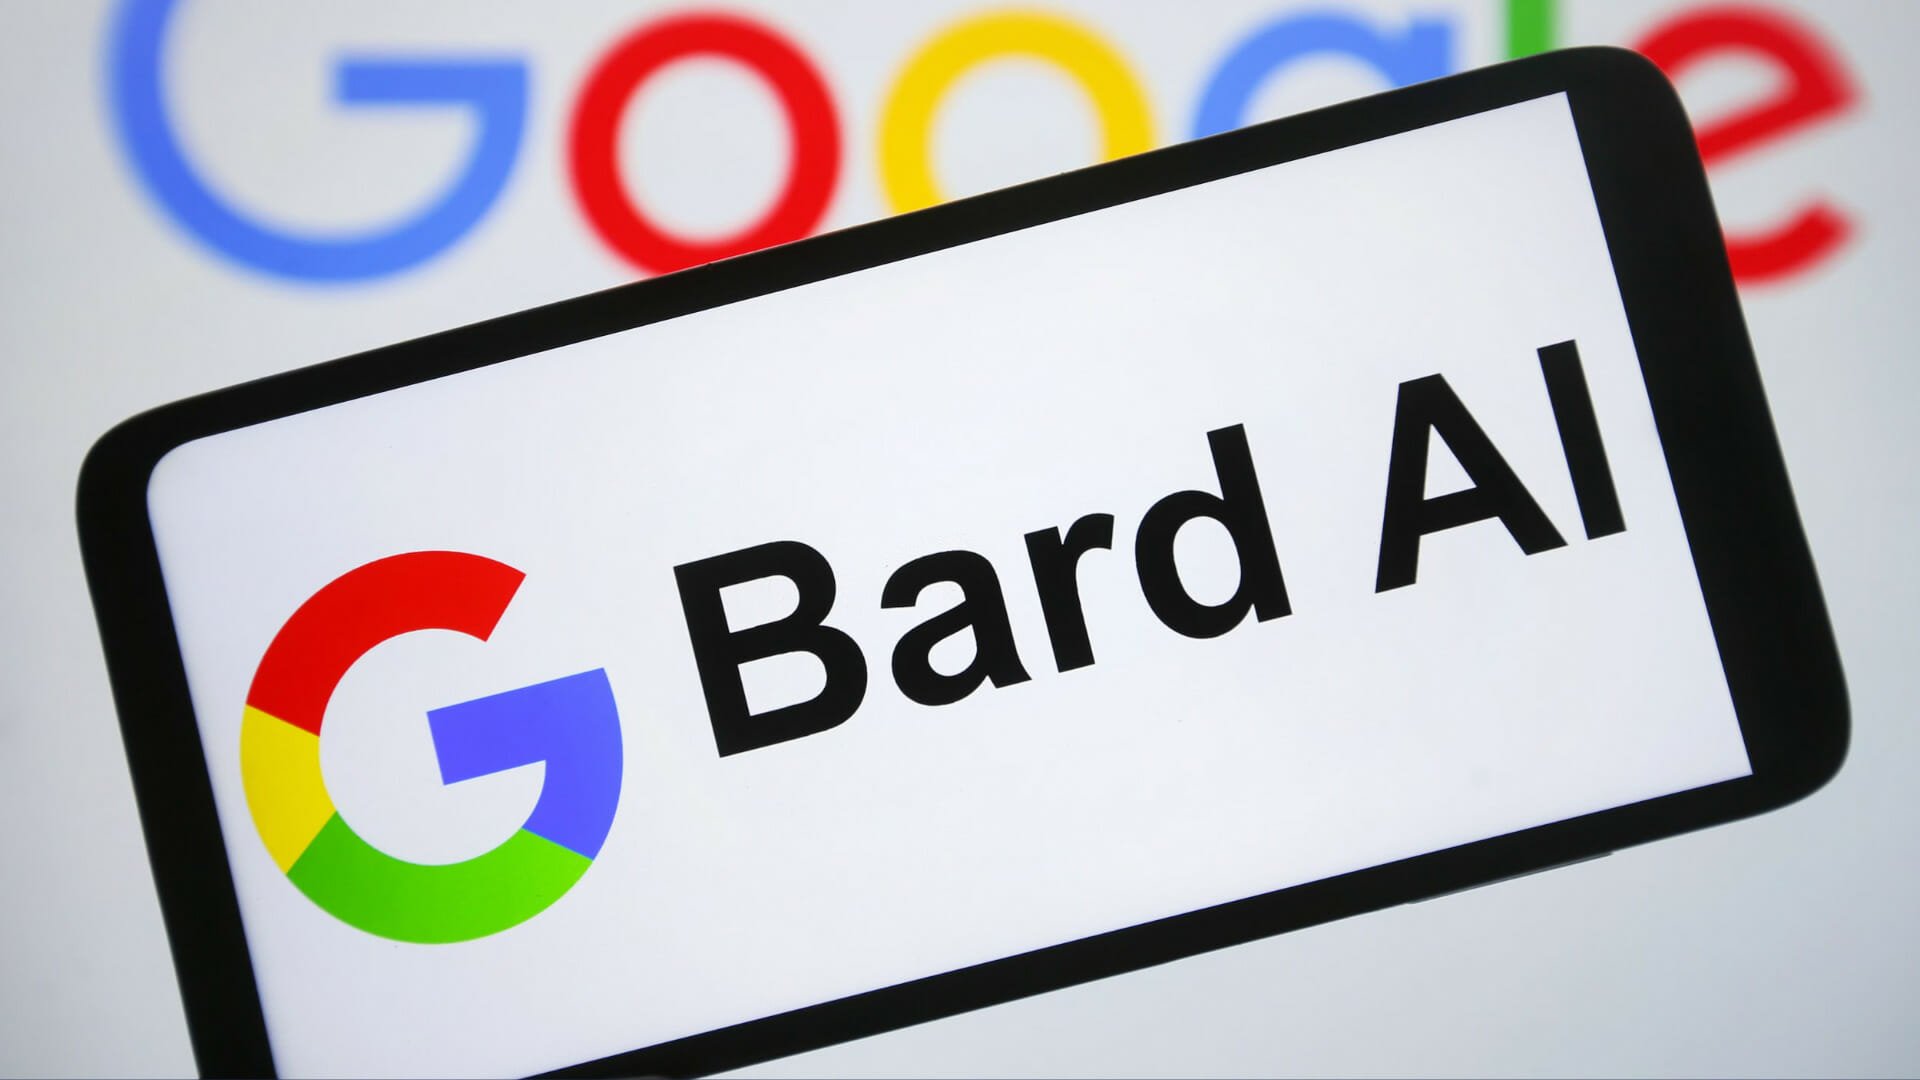 Bard Google